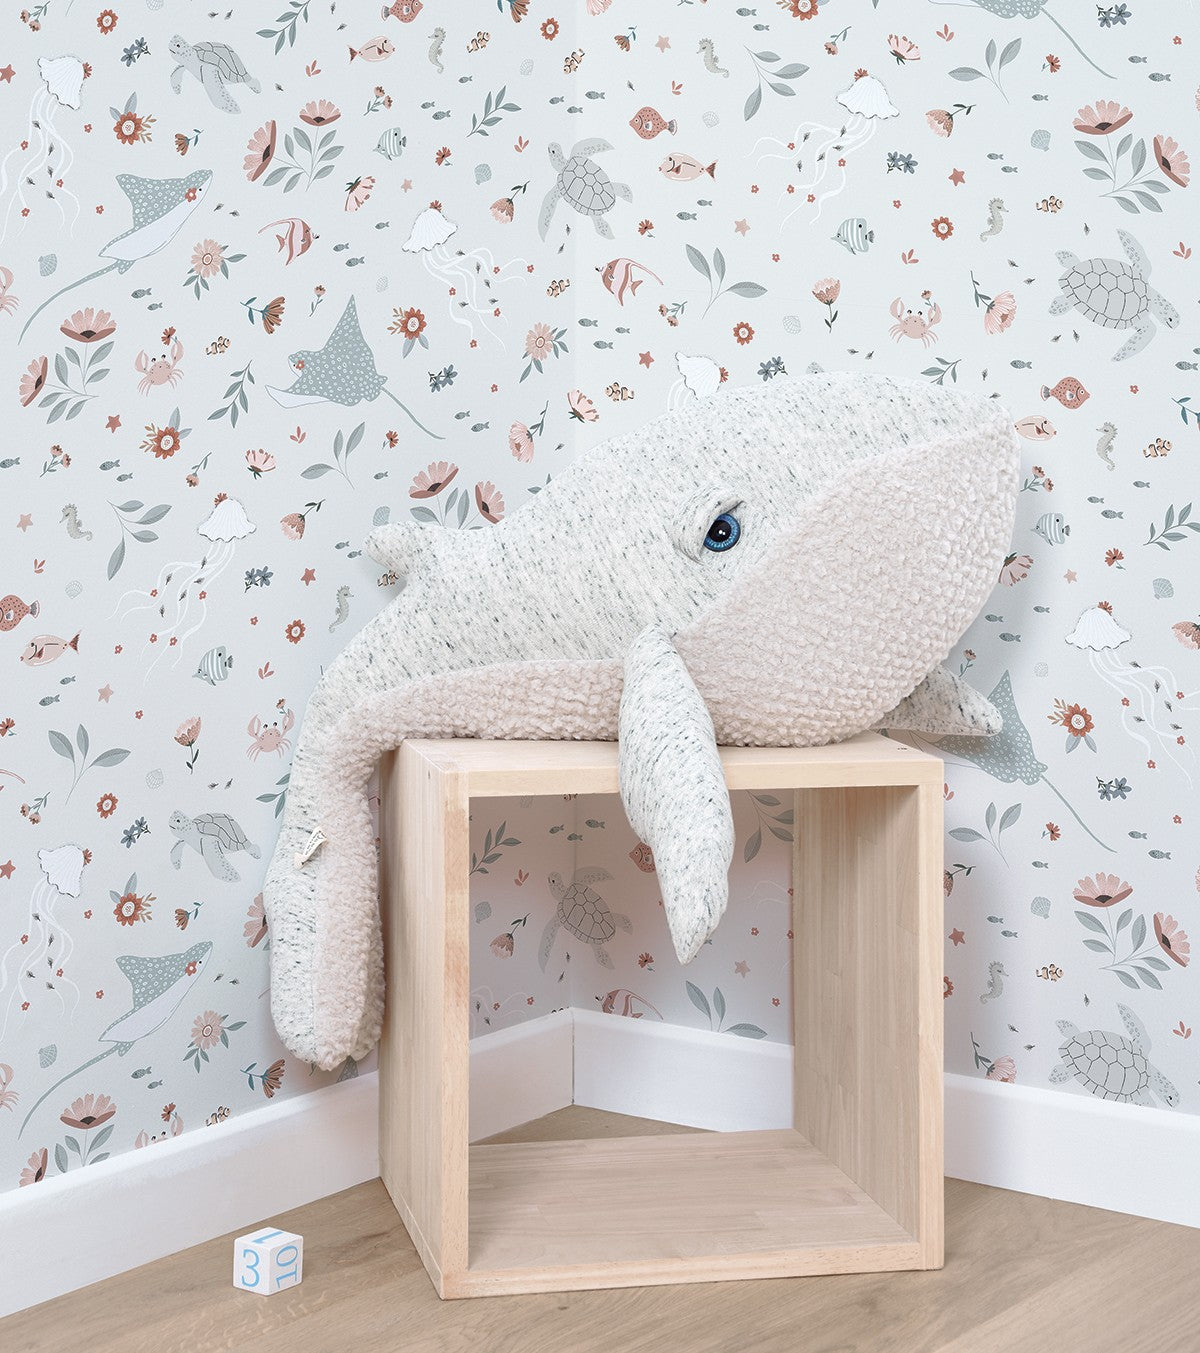 OCEAN FIELD - Children's wallpaper - Ocean animals motif